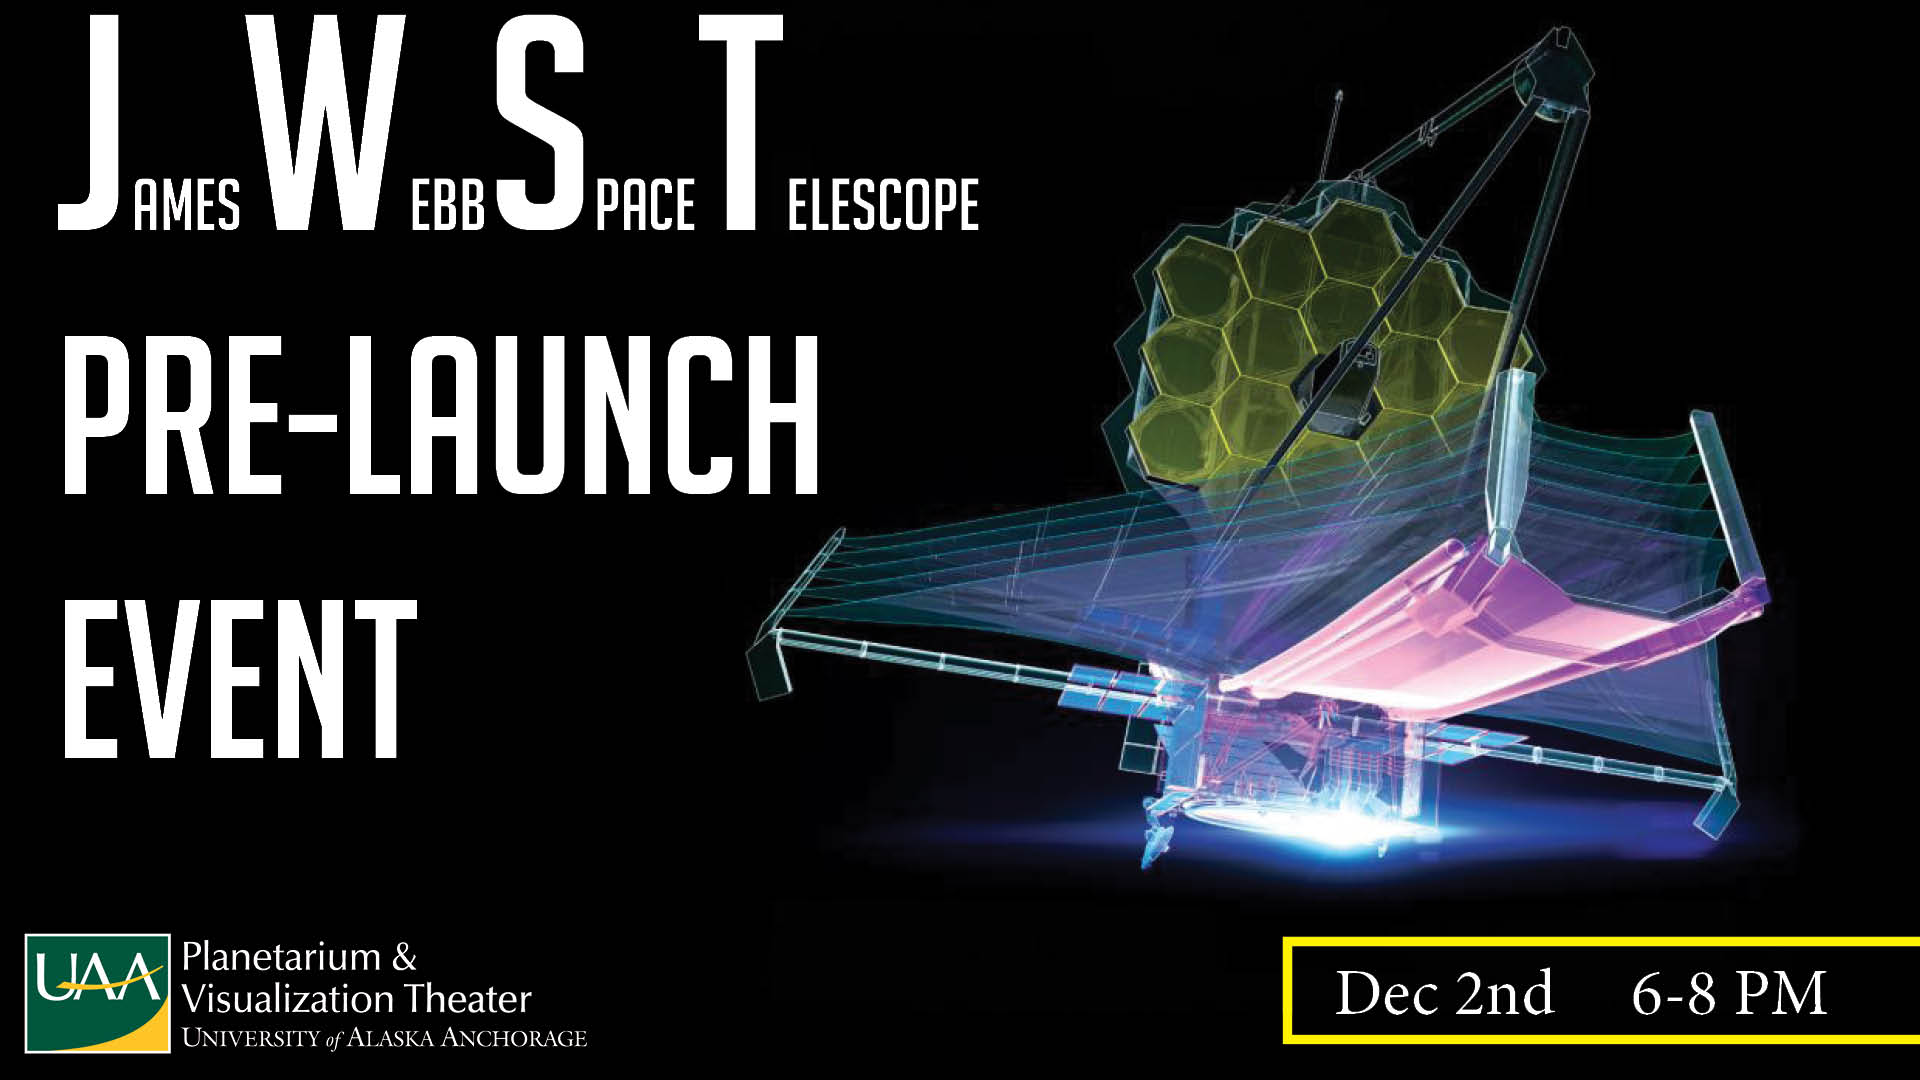 James Webb Space Telescope Pre-Launch Event. Dec. 2nd. 6-8 p.m.